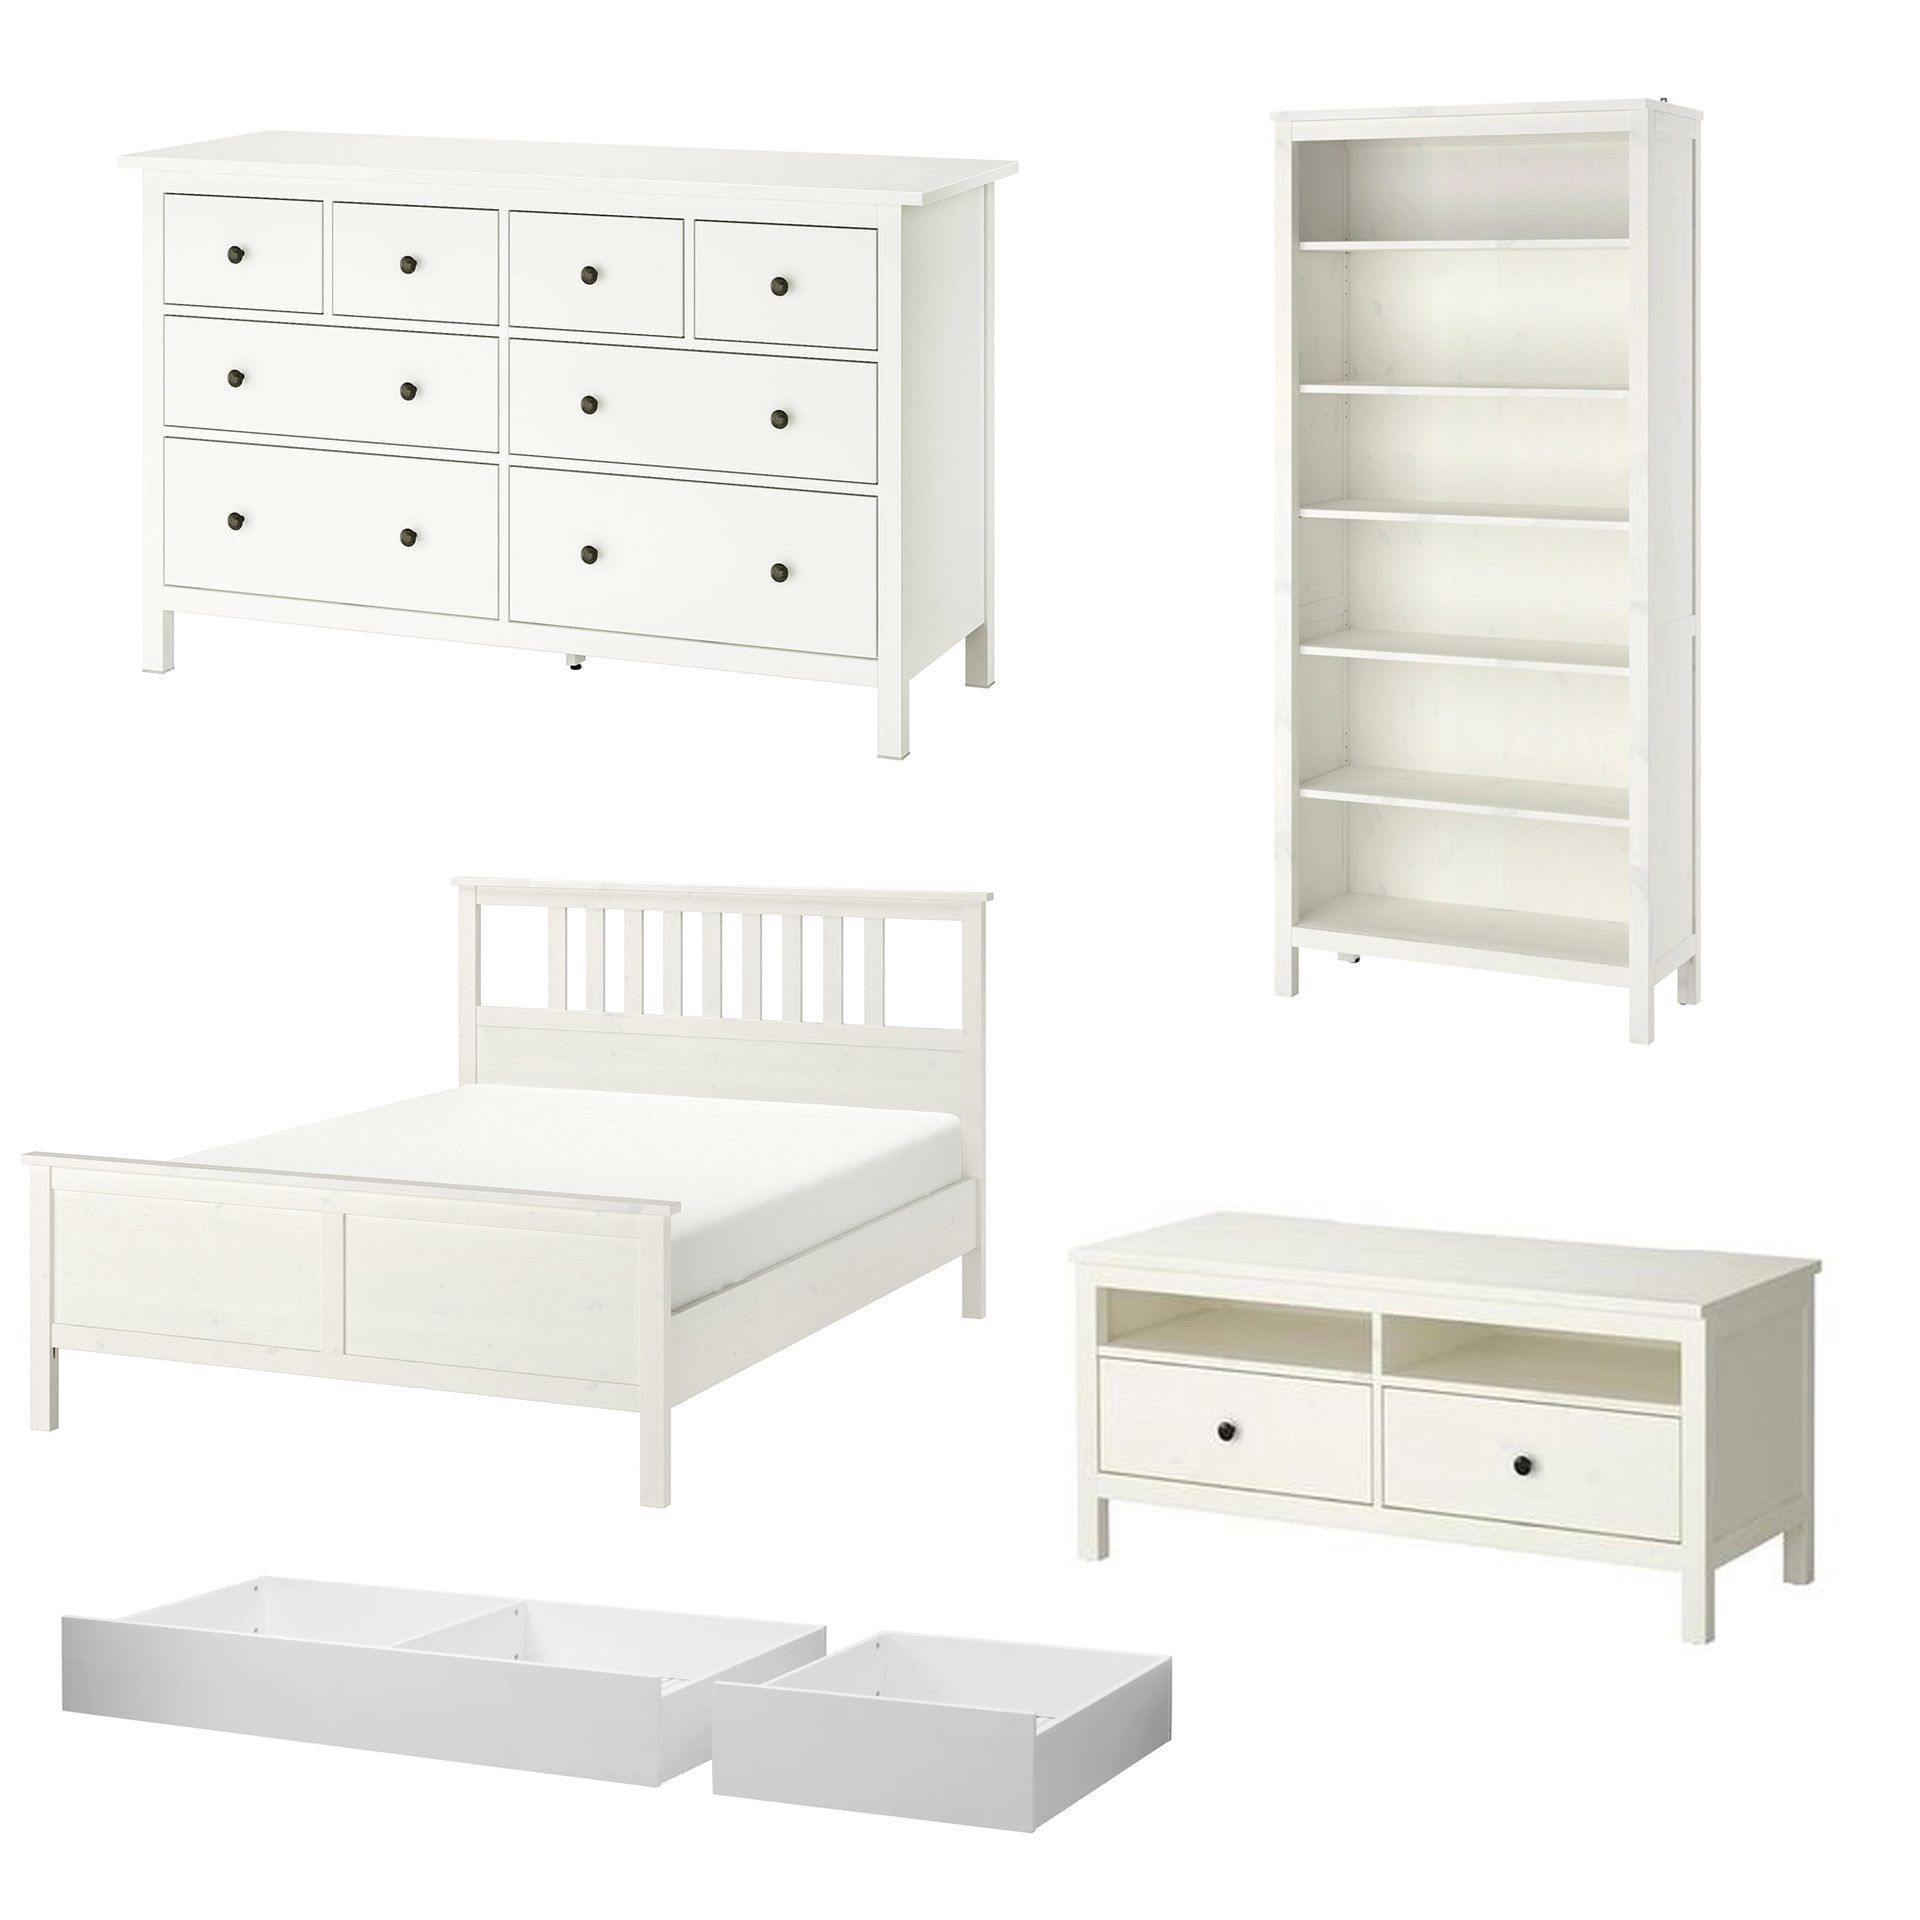 IKEA Hemnes Set White Stain - Bed Frame Dresser Bookcase TV Stand Underbed Storage